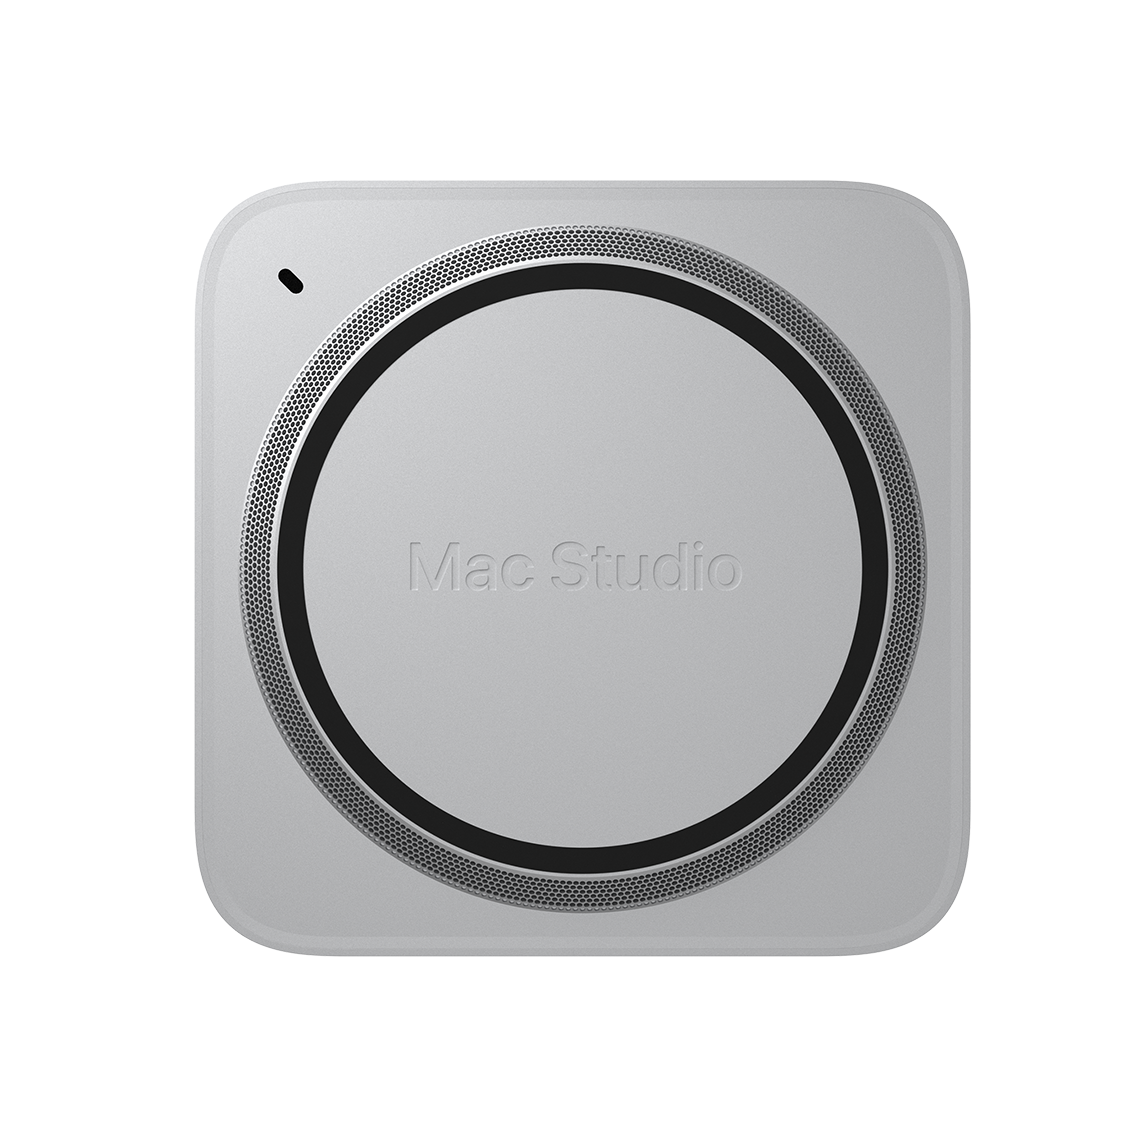 Mac Studio M1 Max (Parent Product)